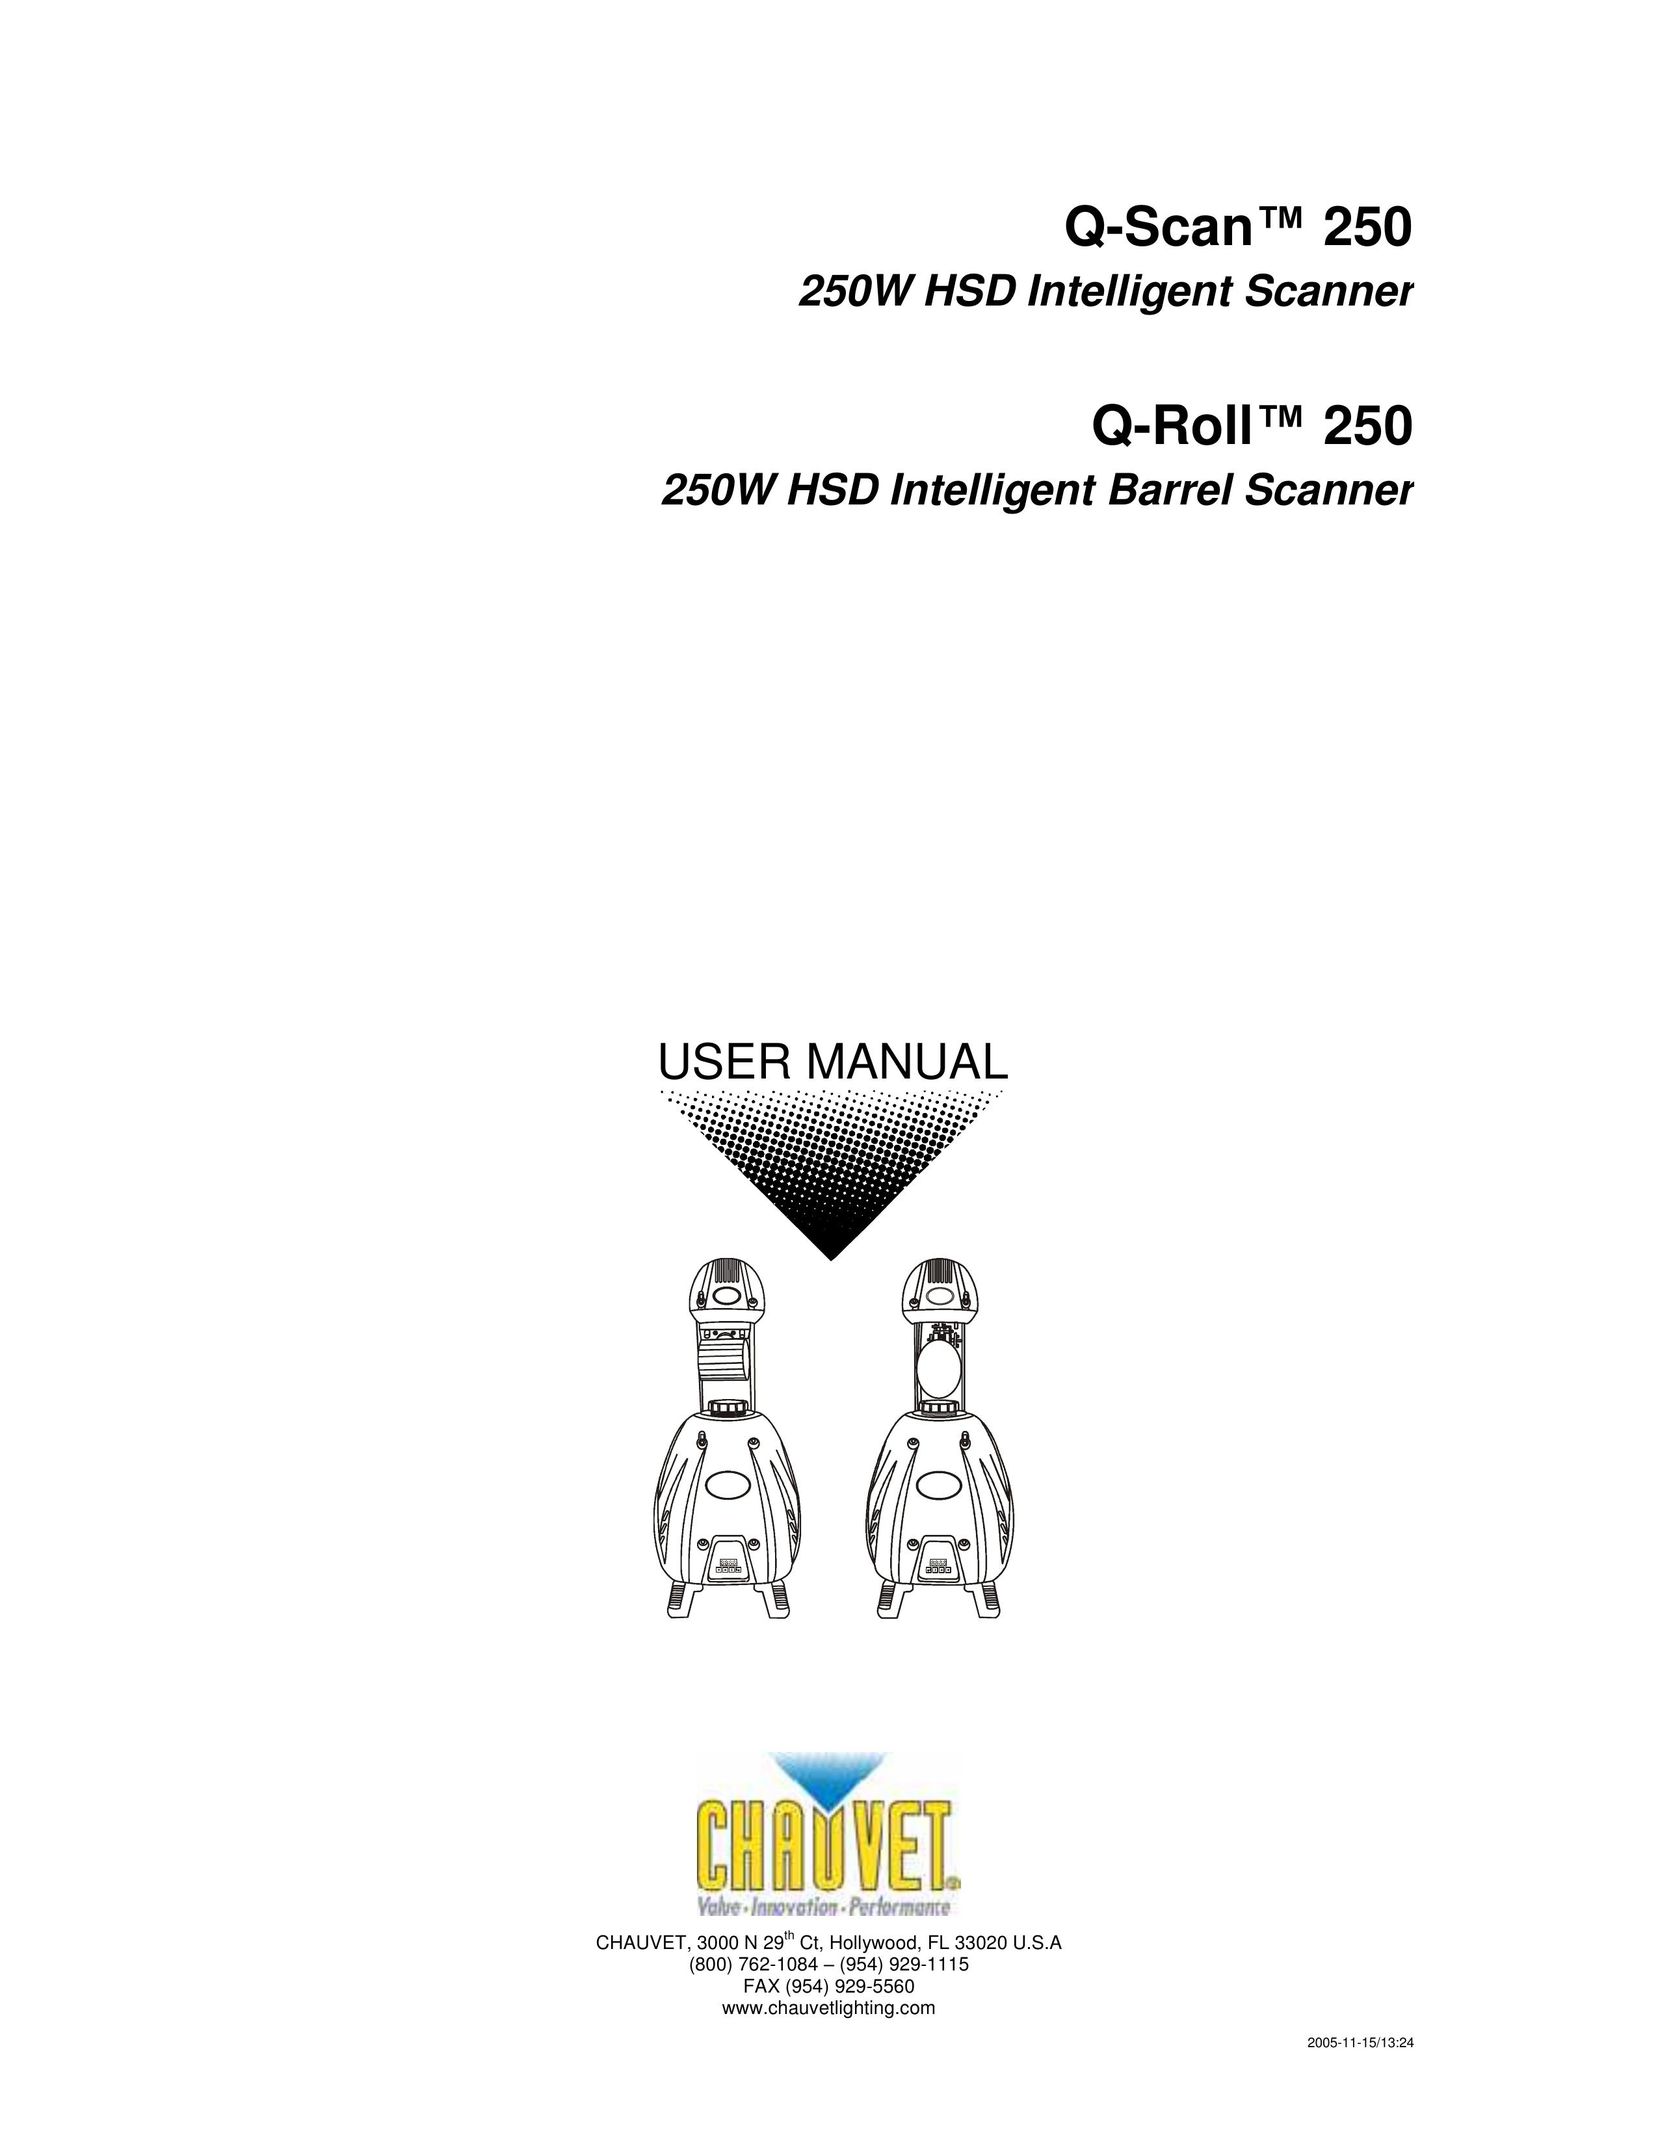 Chauvet Q-ScanTM 250 Scanner User Manual